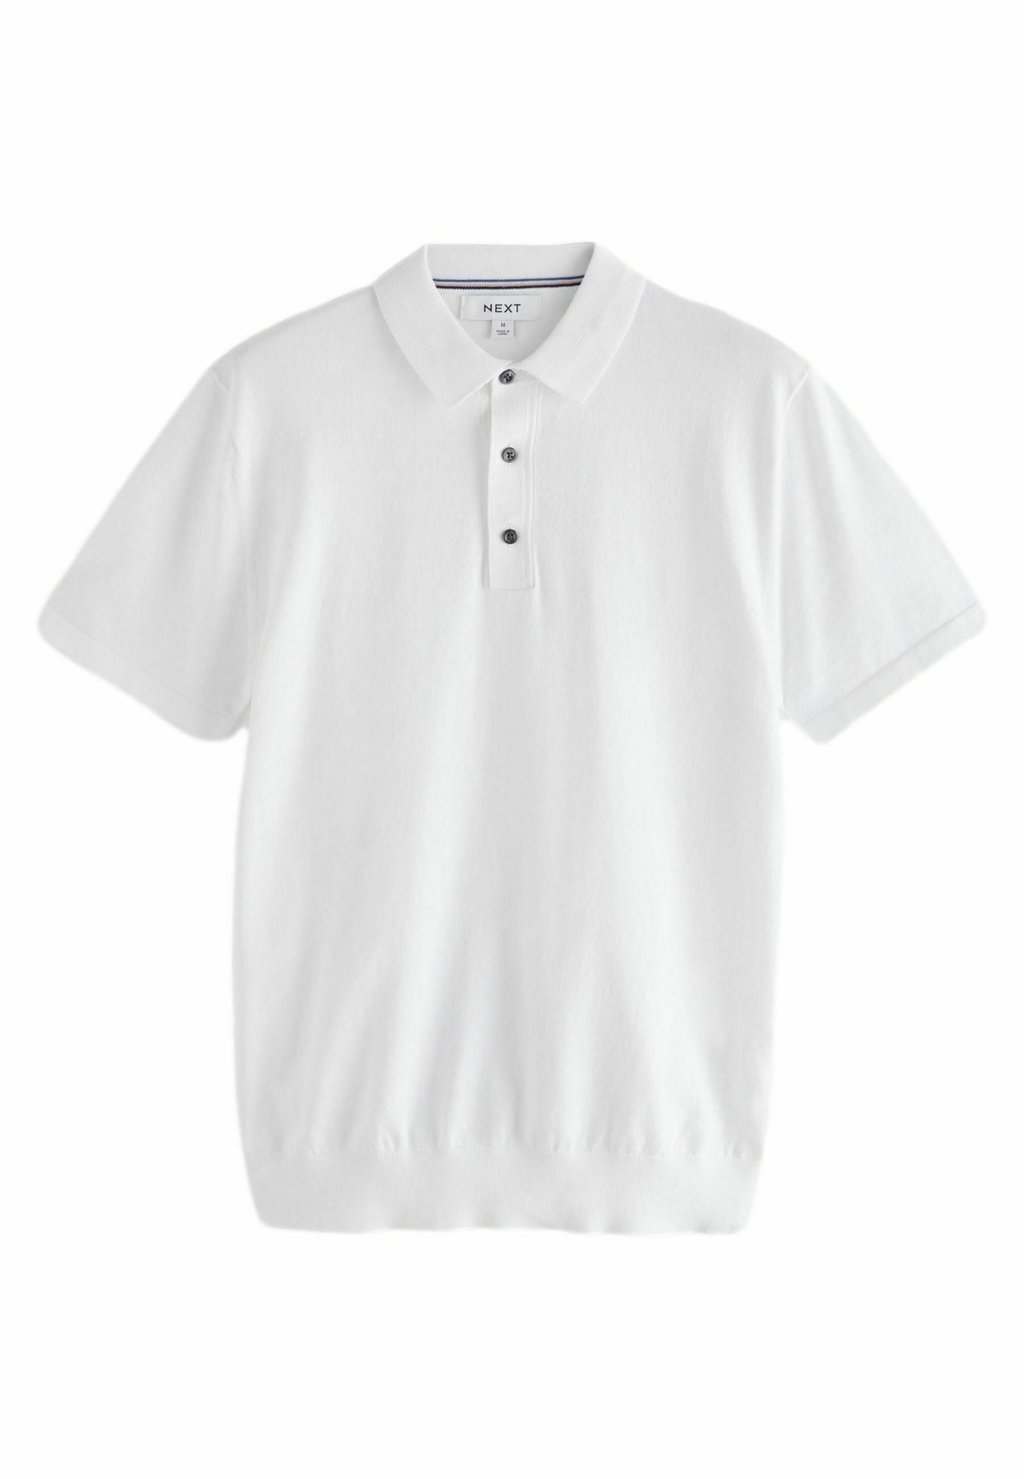 Рубашка-поло SHORT SLEEVE REGULAR FIT Next, цвет white рубашка поло short sleeve regular fit next цвет neutral